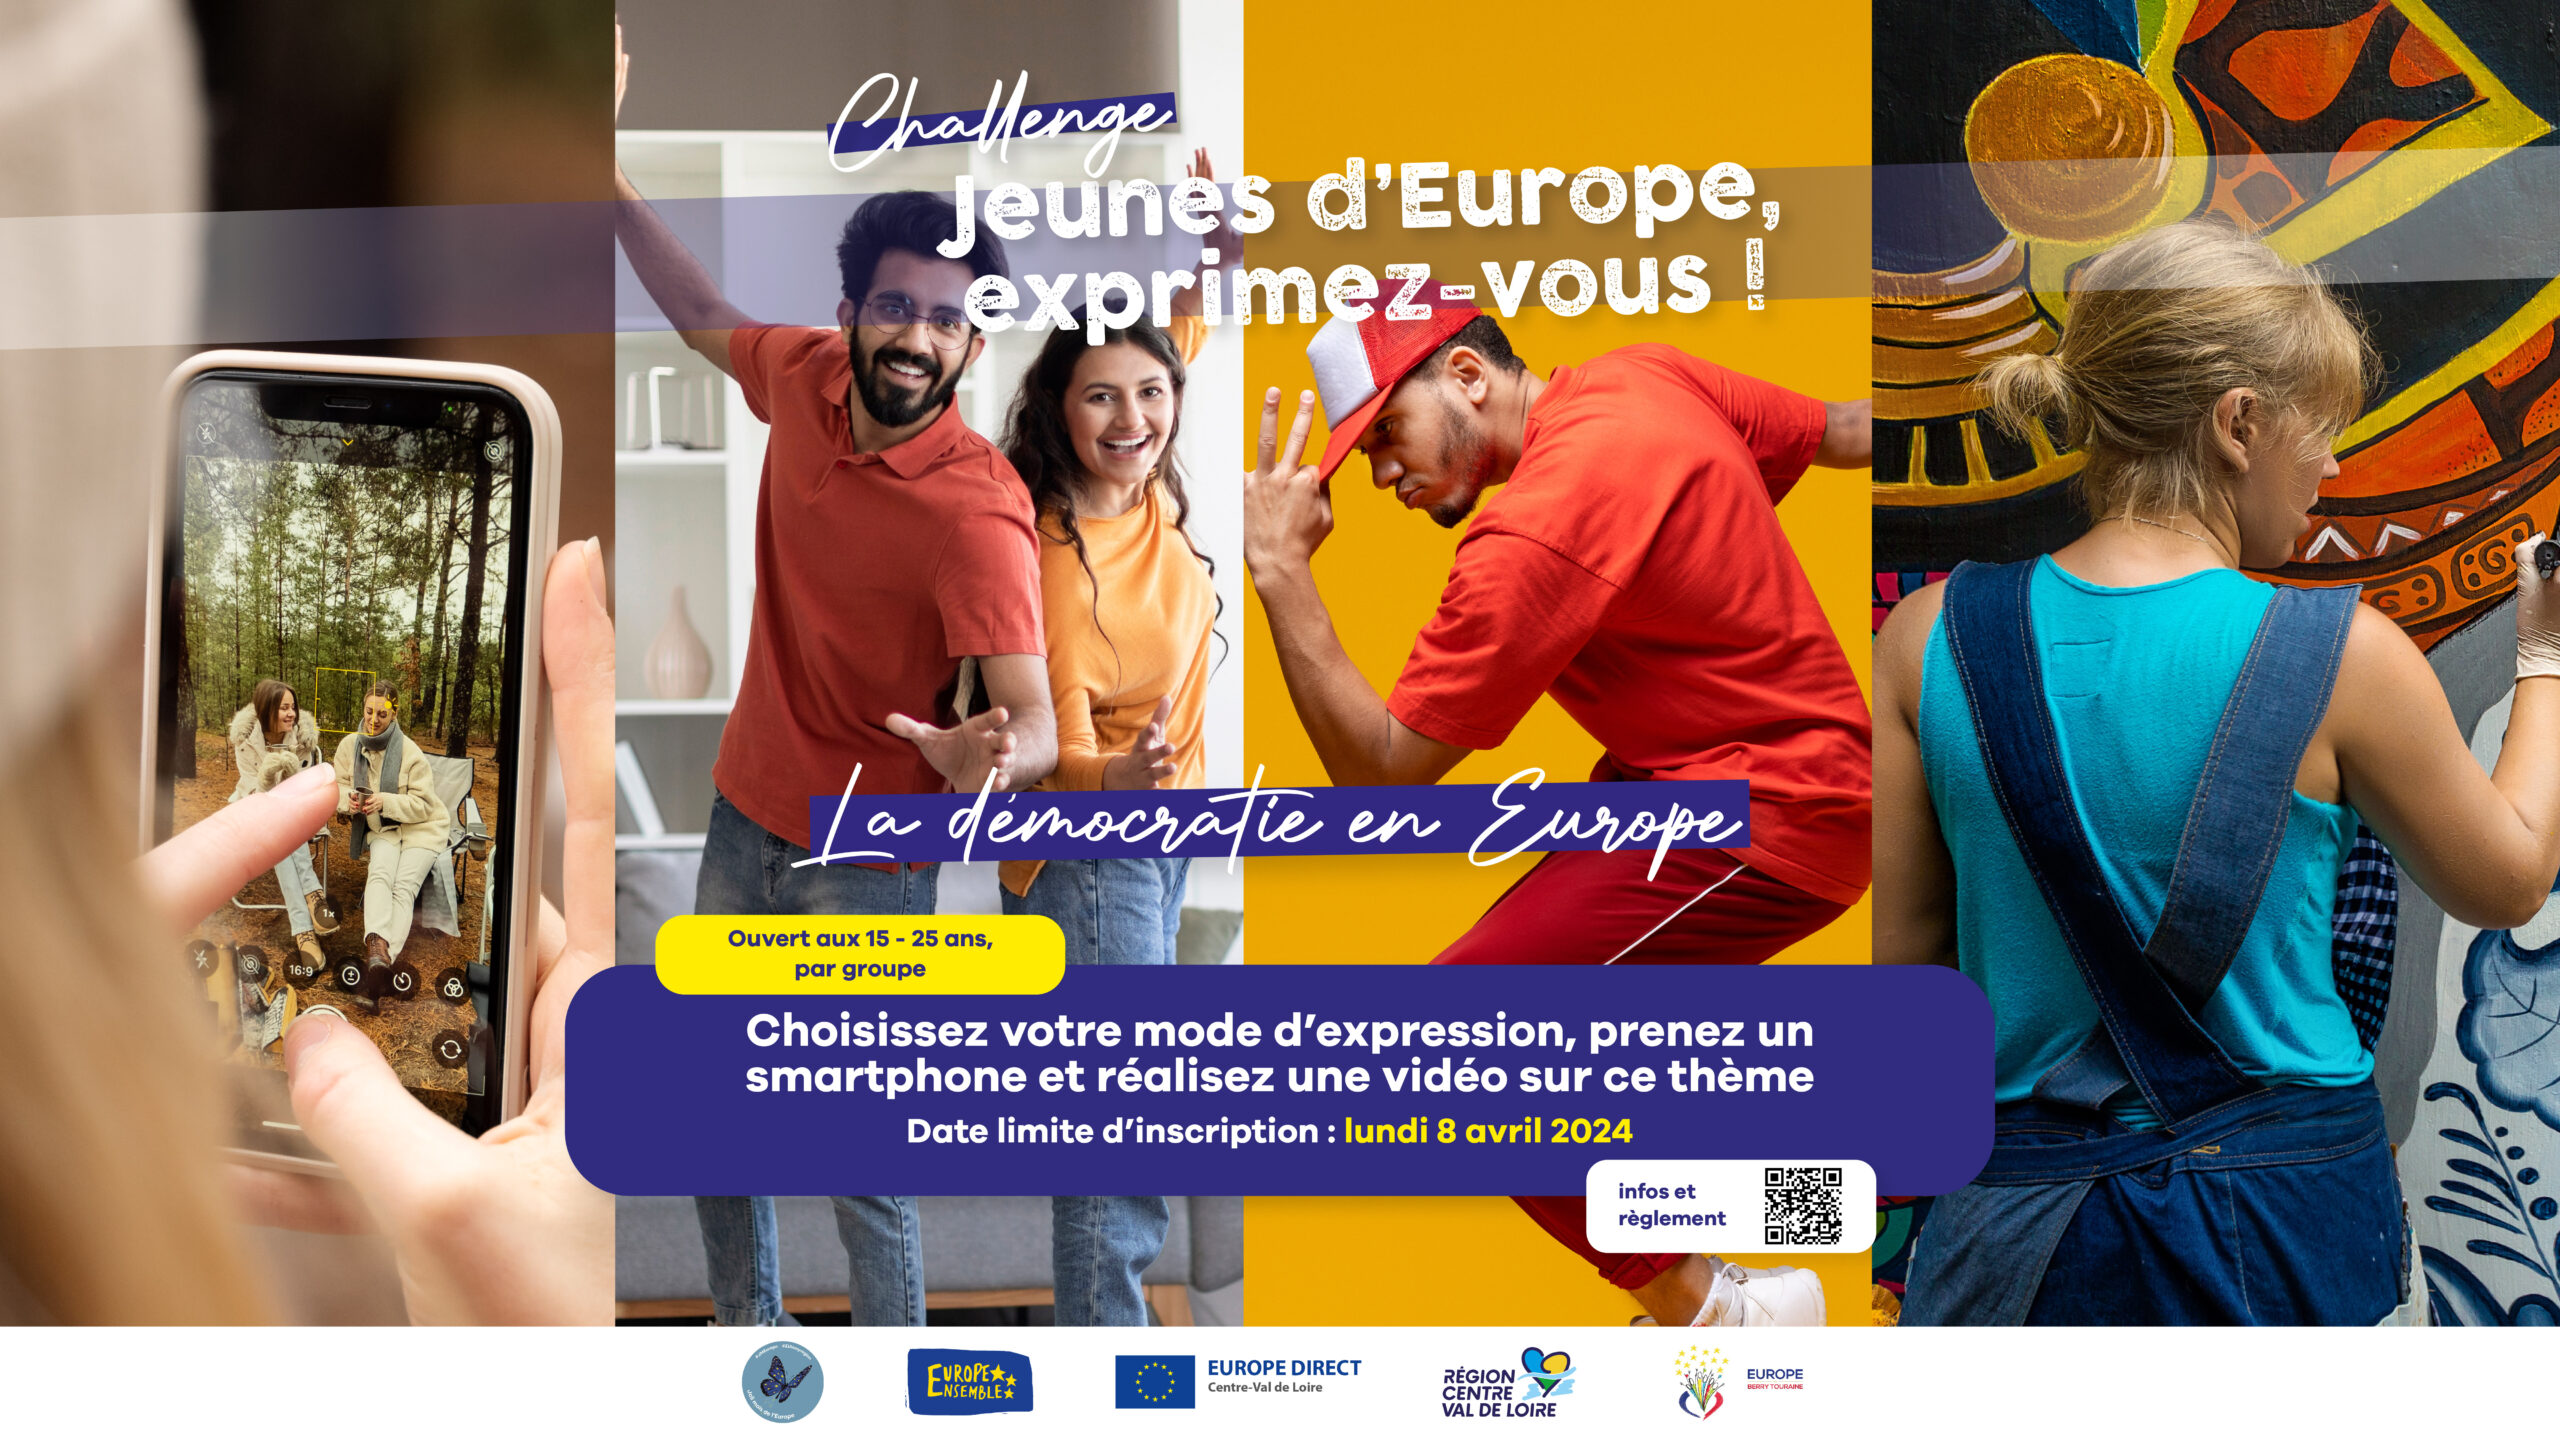 Le challenge « Jeunes d’Europe, exprimez-vous !» est lancé !